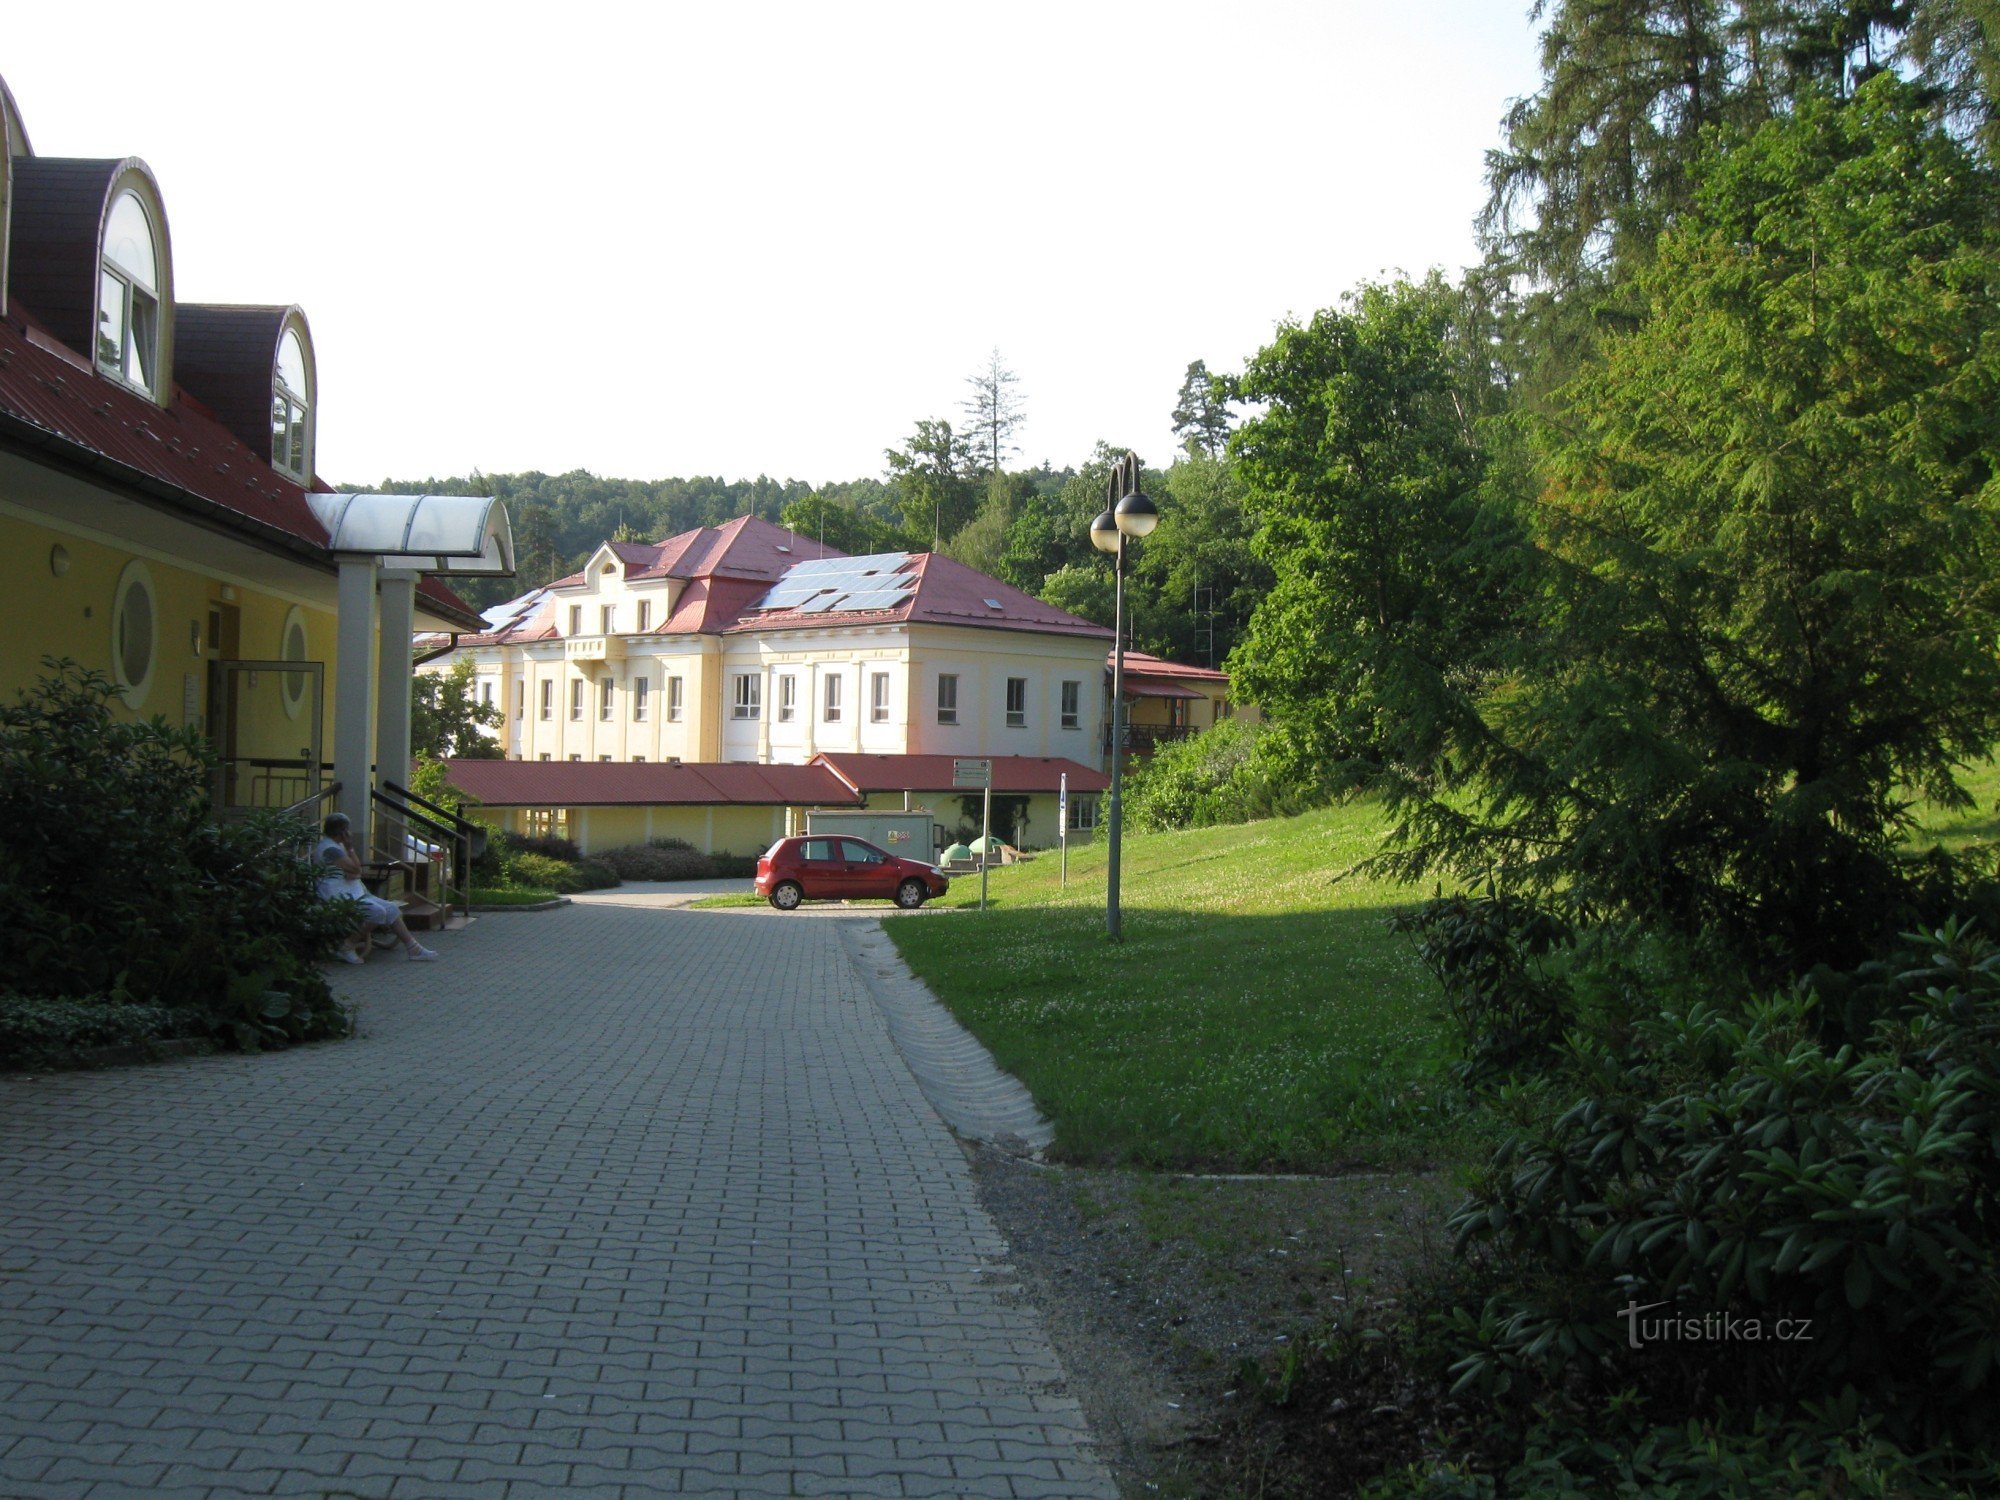 Paseka - Institut medical profesional, sanatoriu, clădirea C